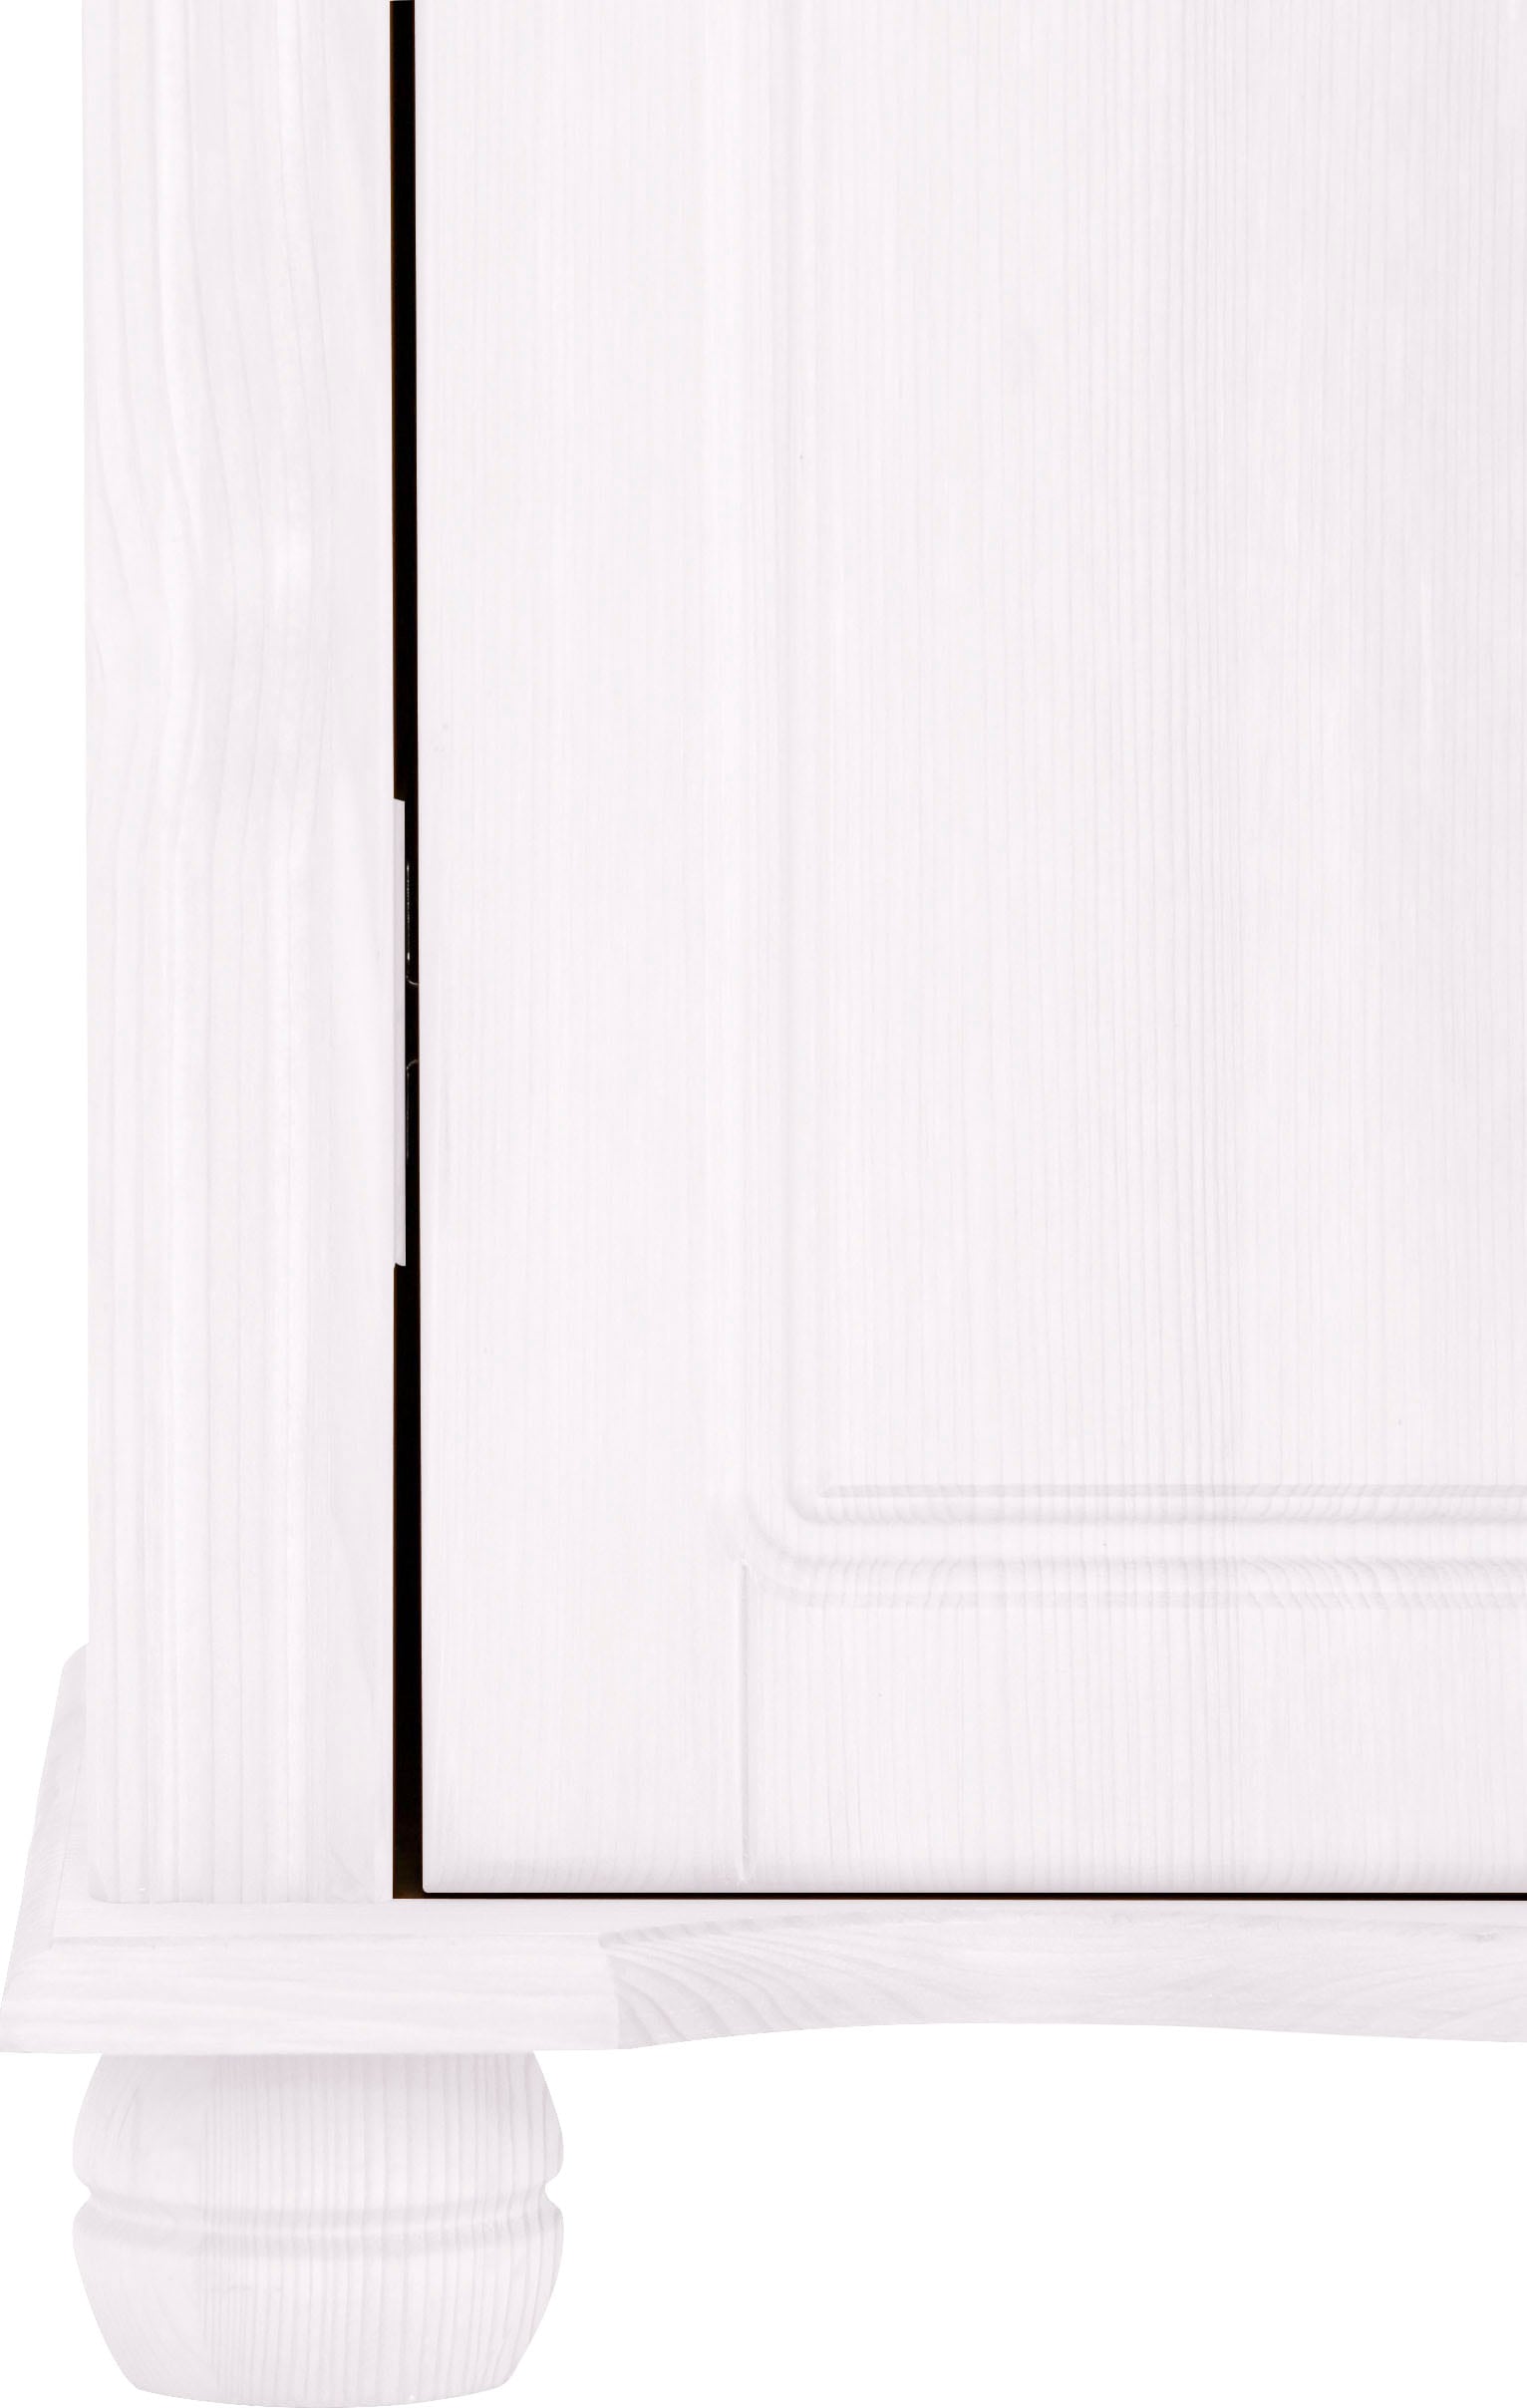 Home affaire Garderobenschrank, Florenz», 67 cm breit, aus massiver Kiefer  bestellen bei OTTO